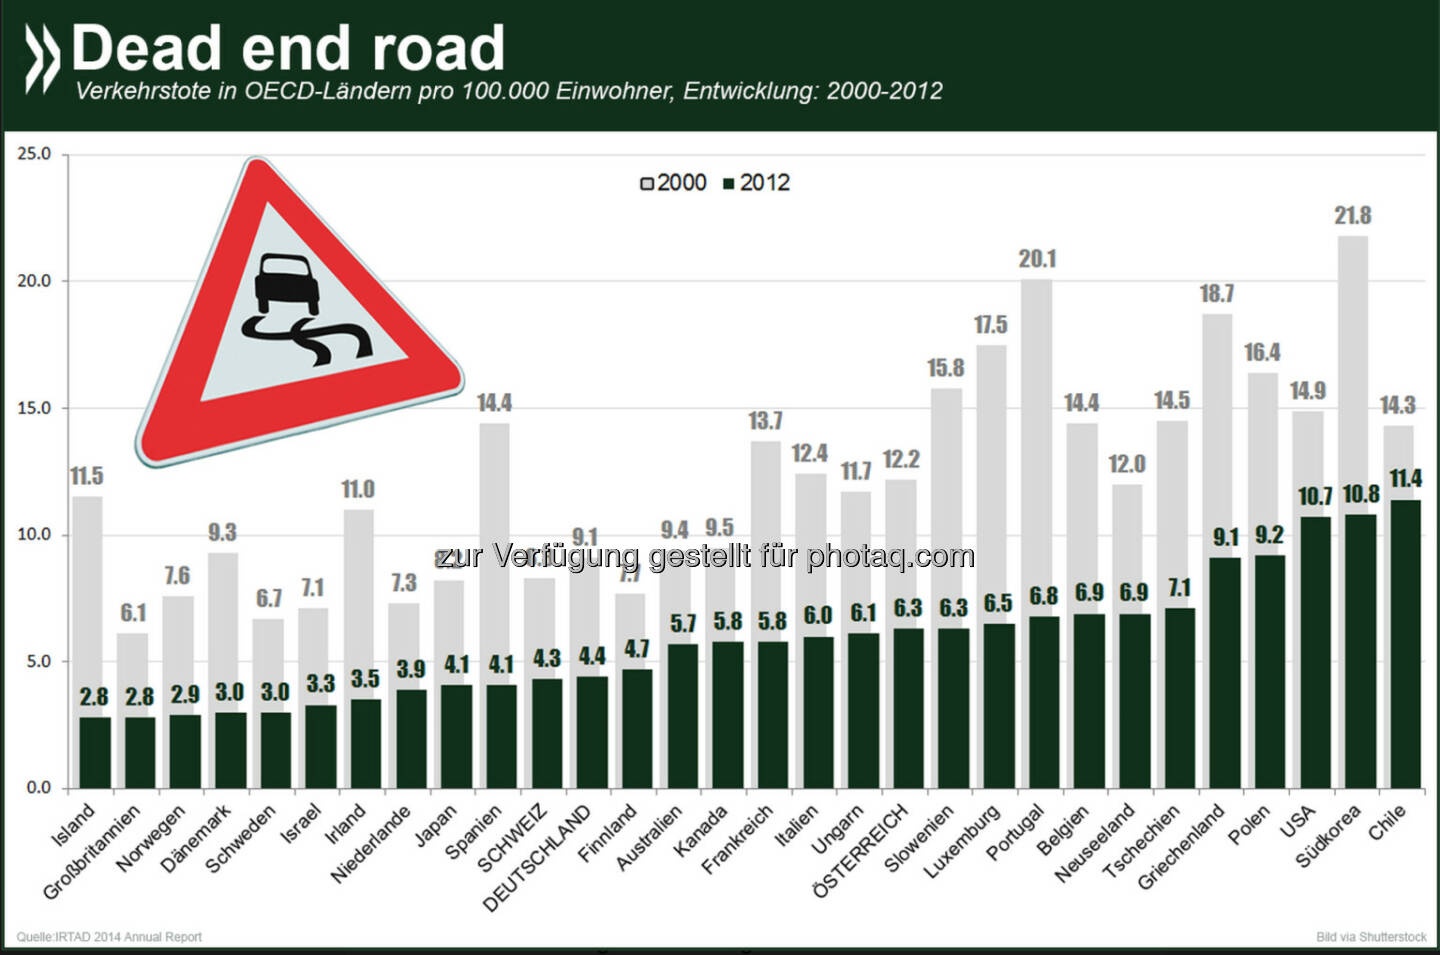 No dead end road: Zwischen 2000 und 2012 ist die Zahl der Verkehrstoten in allen erfassten OECD-Ländern massiv gesunken. Die größten Rückgänge verzeichneten Island, Spanien und Dänemark, die bis zu 70 Prozent weniger Opfer zu beklagen hatten.
Weitere Informationen zur Verkehrssicherheit gibt es unter: http://bit.ly/1qaPILy